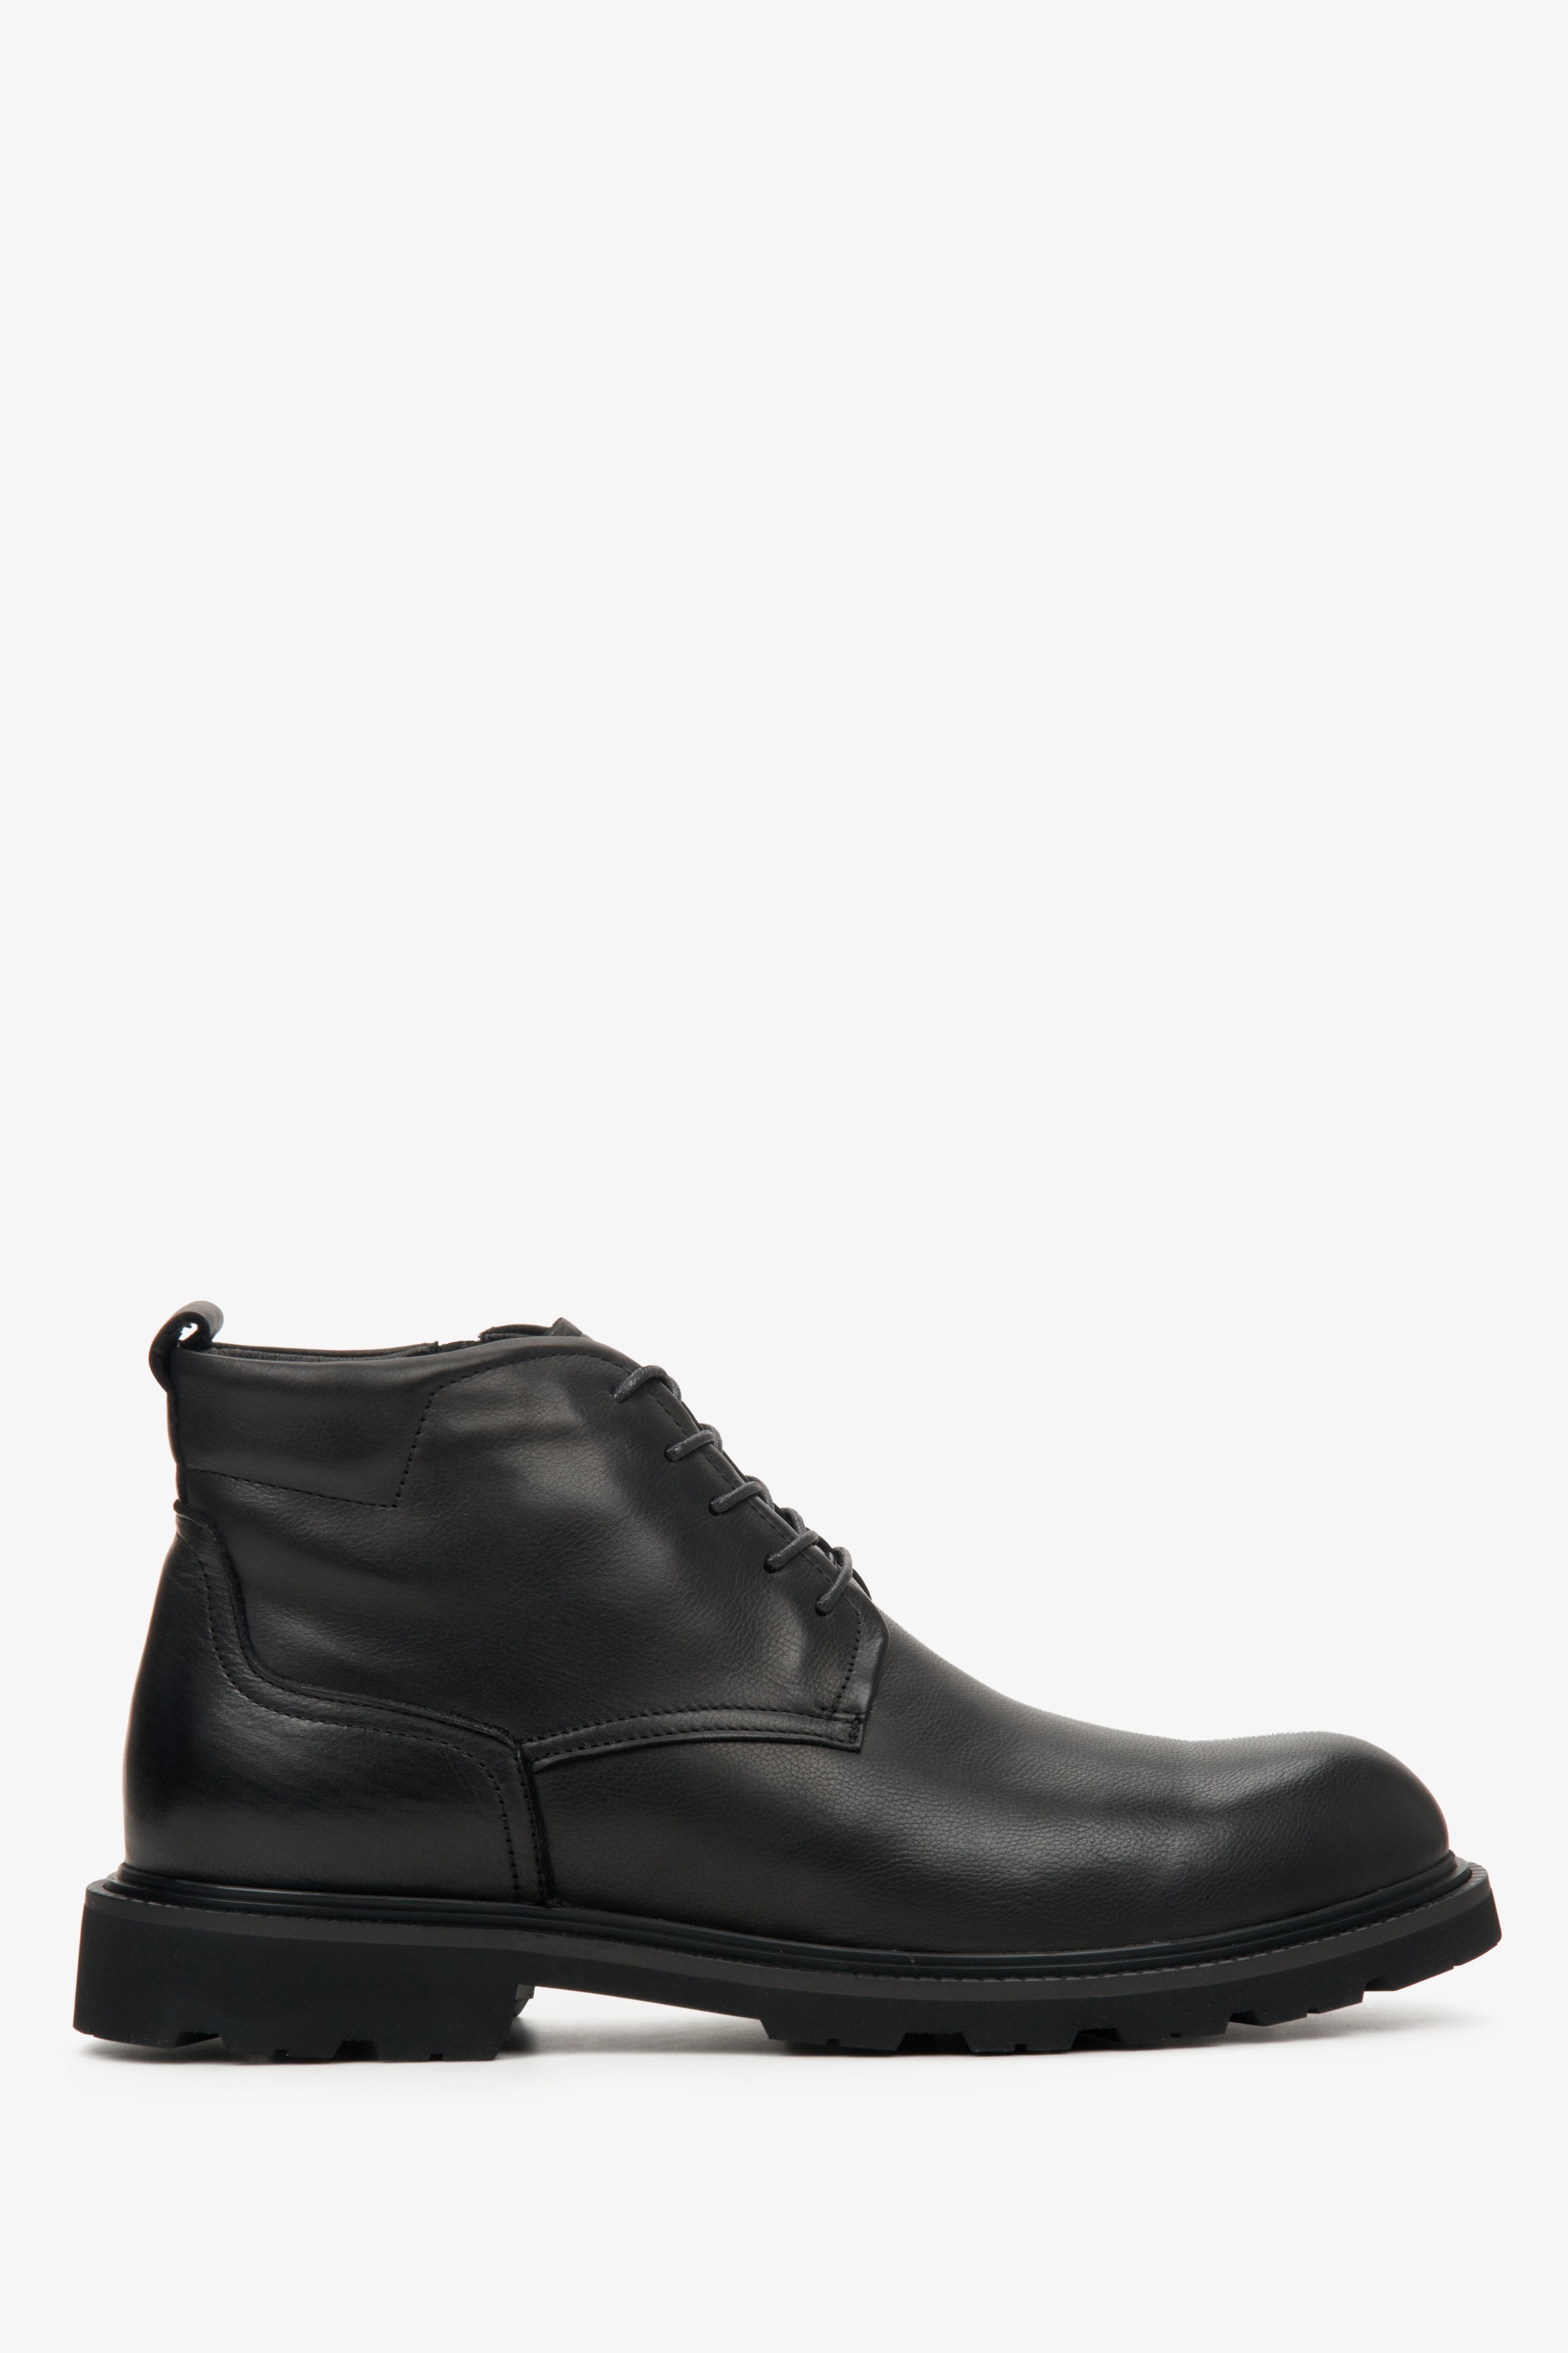 Skórzane zimowe botki męskie Estro w kolorze czarnym - profil buta.